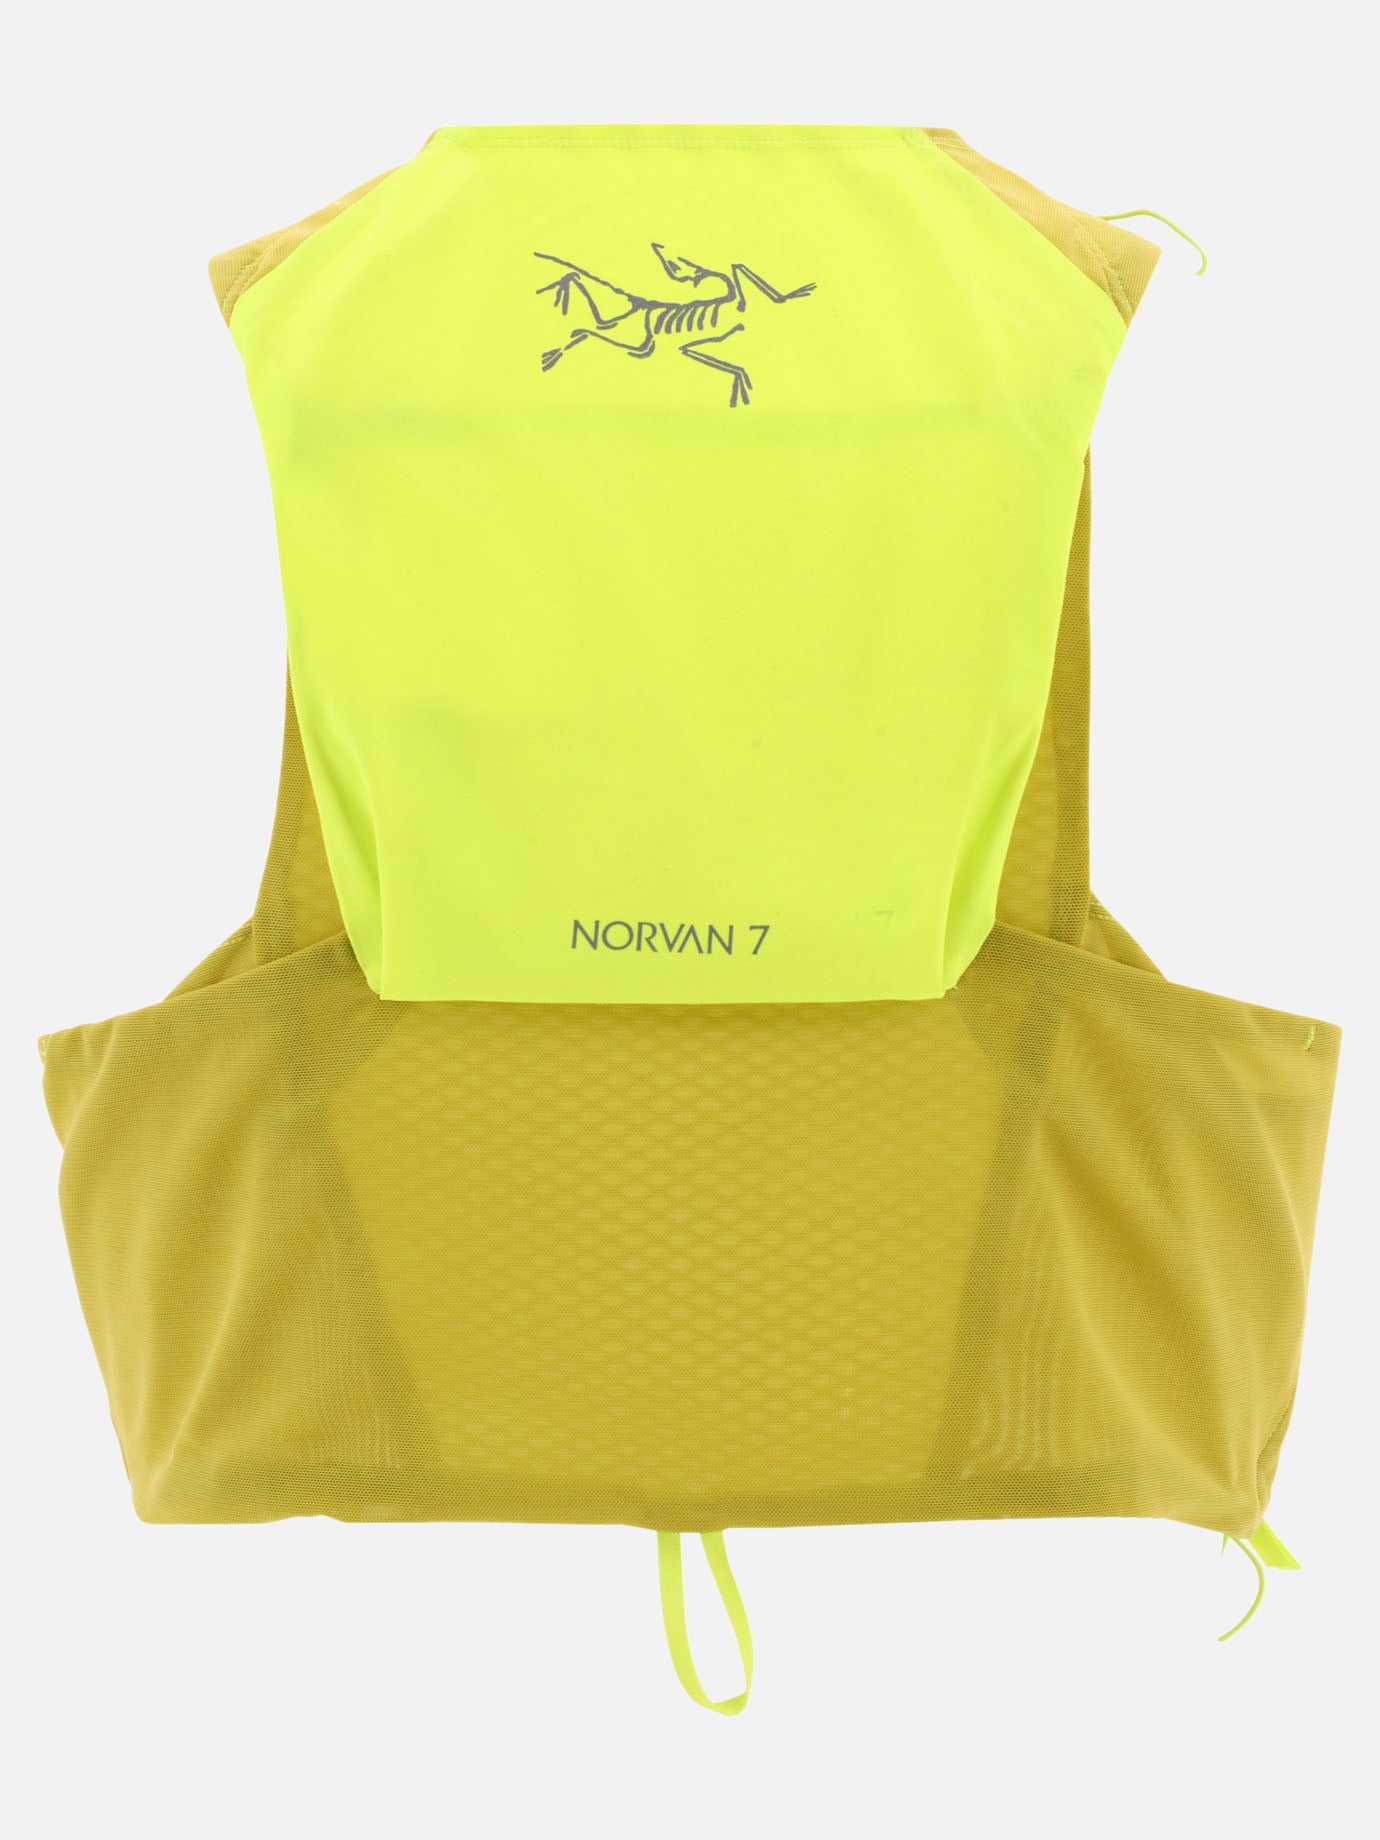 "Norvan 7" vest